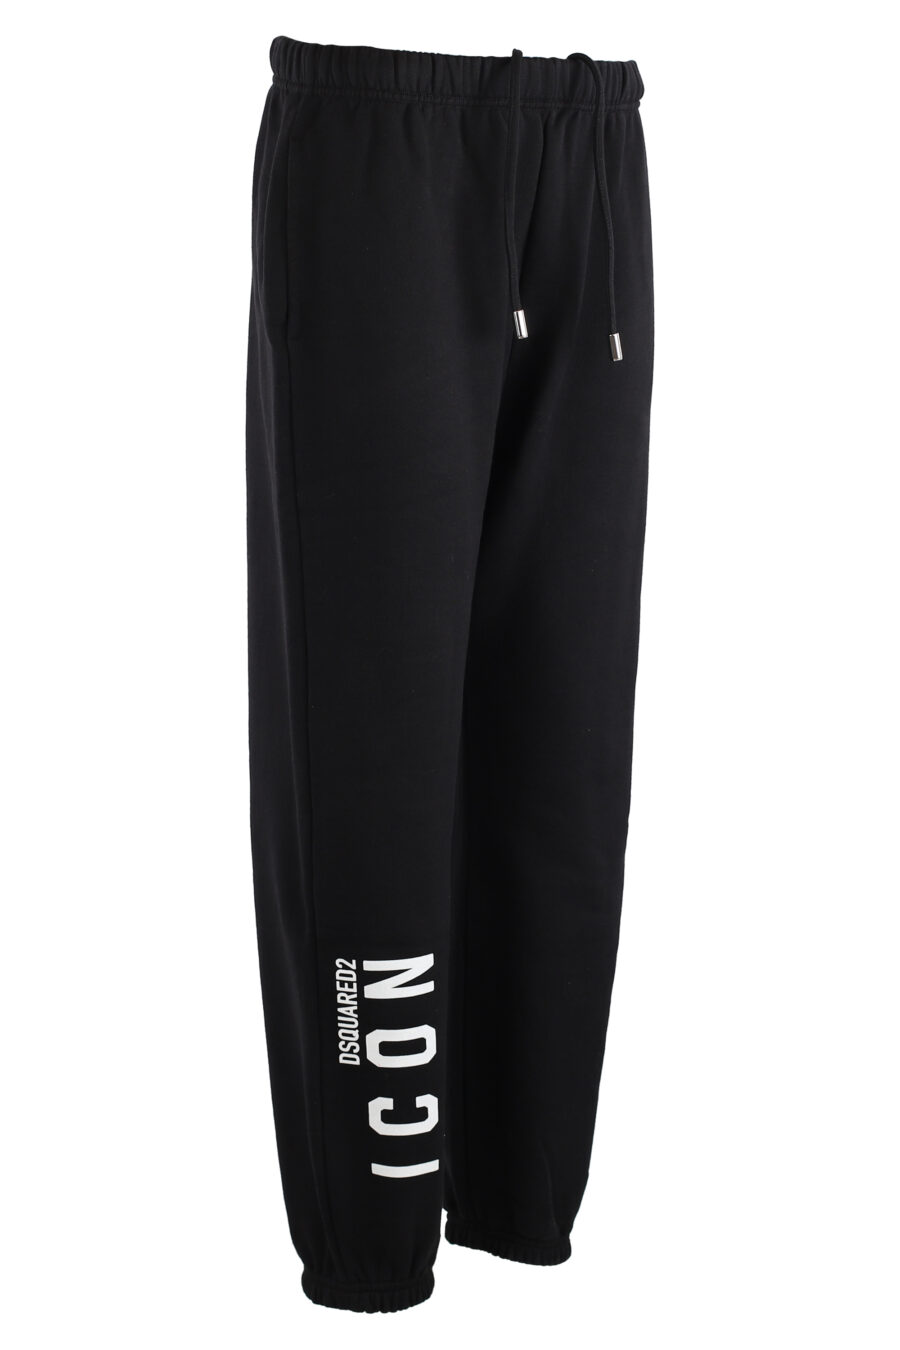 Pantalón de chándal negro con logo "icon" vertical - IMG 7572